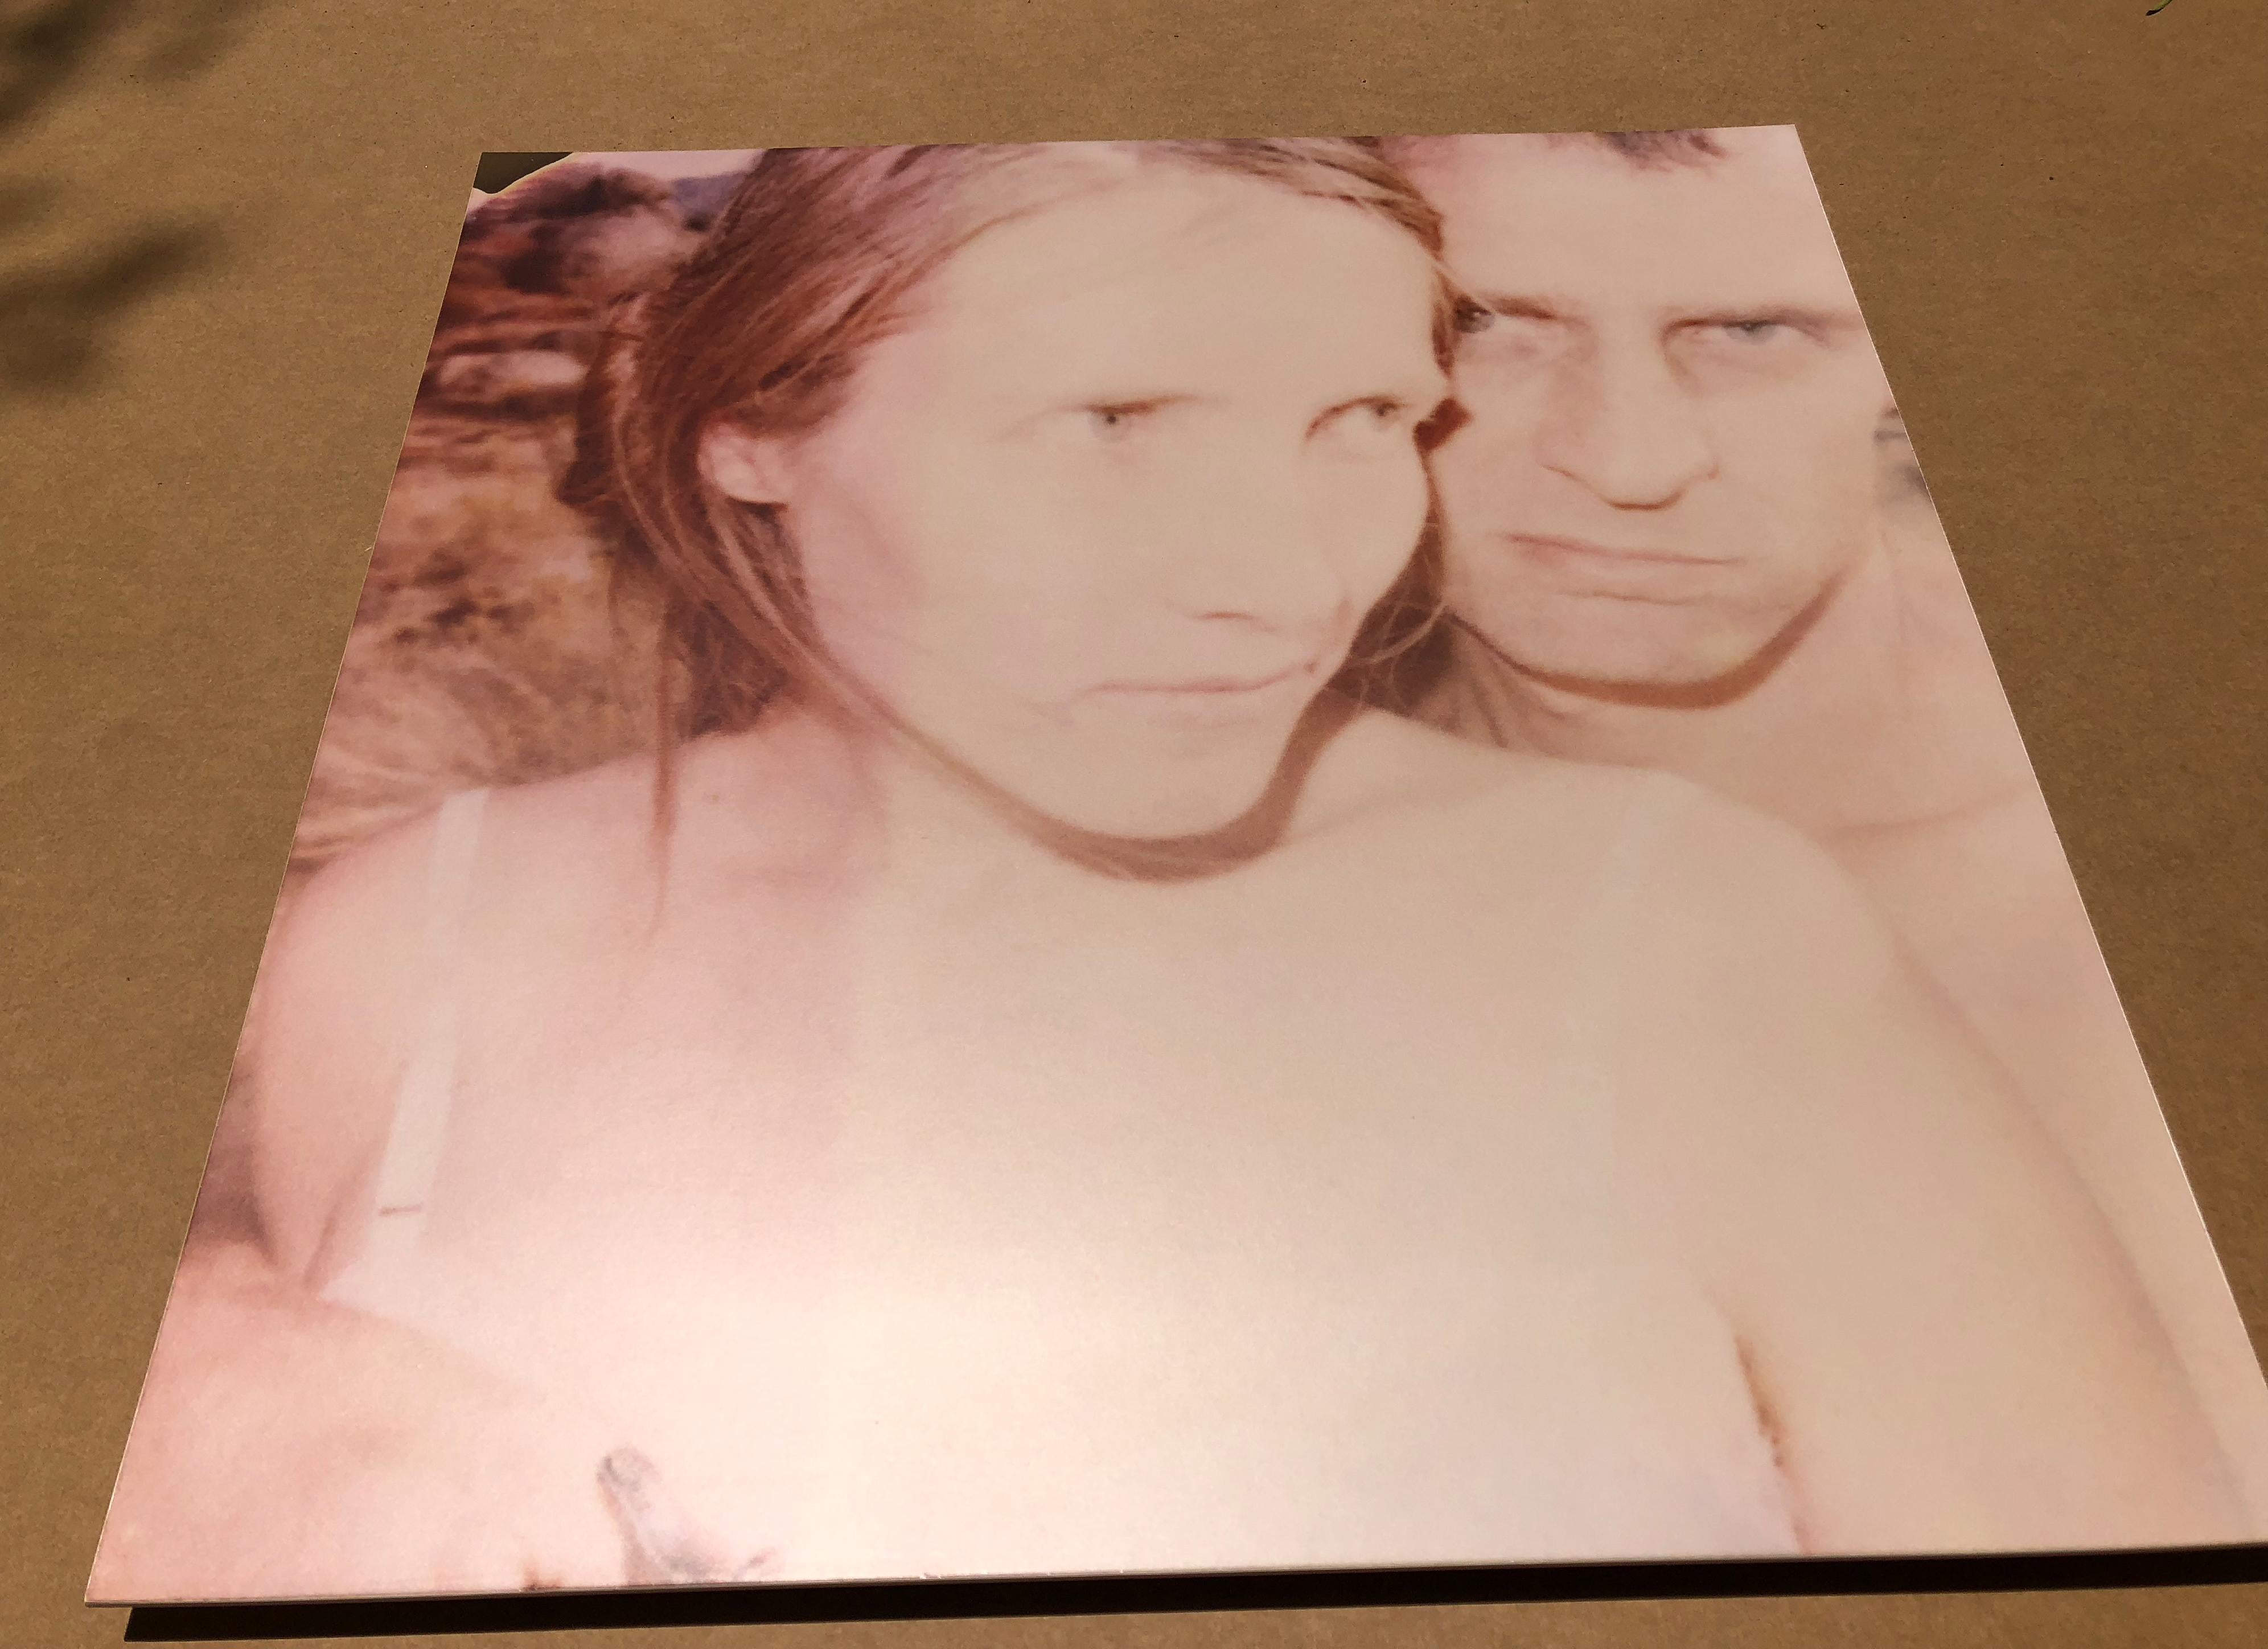 Randy and I, Teil 1 (Wastelands) – Polaroid, analog, montiert, zeitgenössisch (Zeitgenössisch), Photograph, von Stefanie Schneider